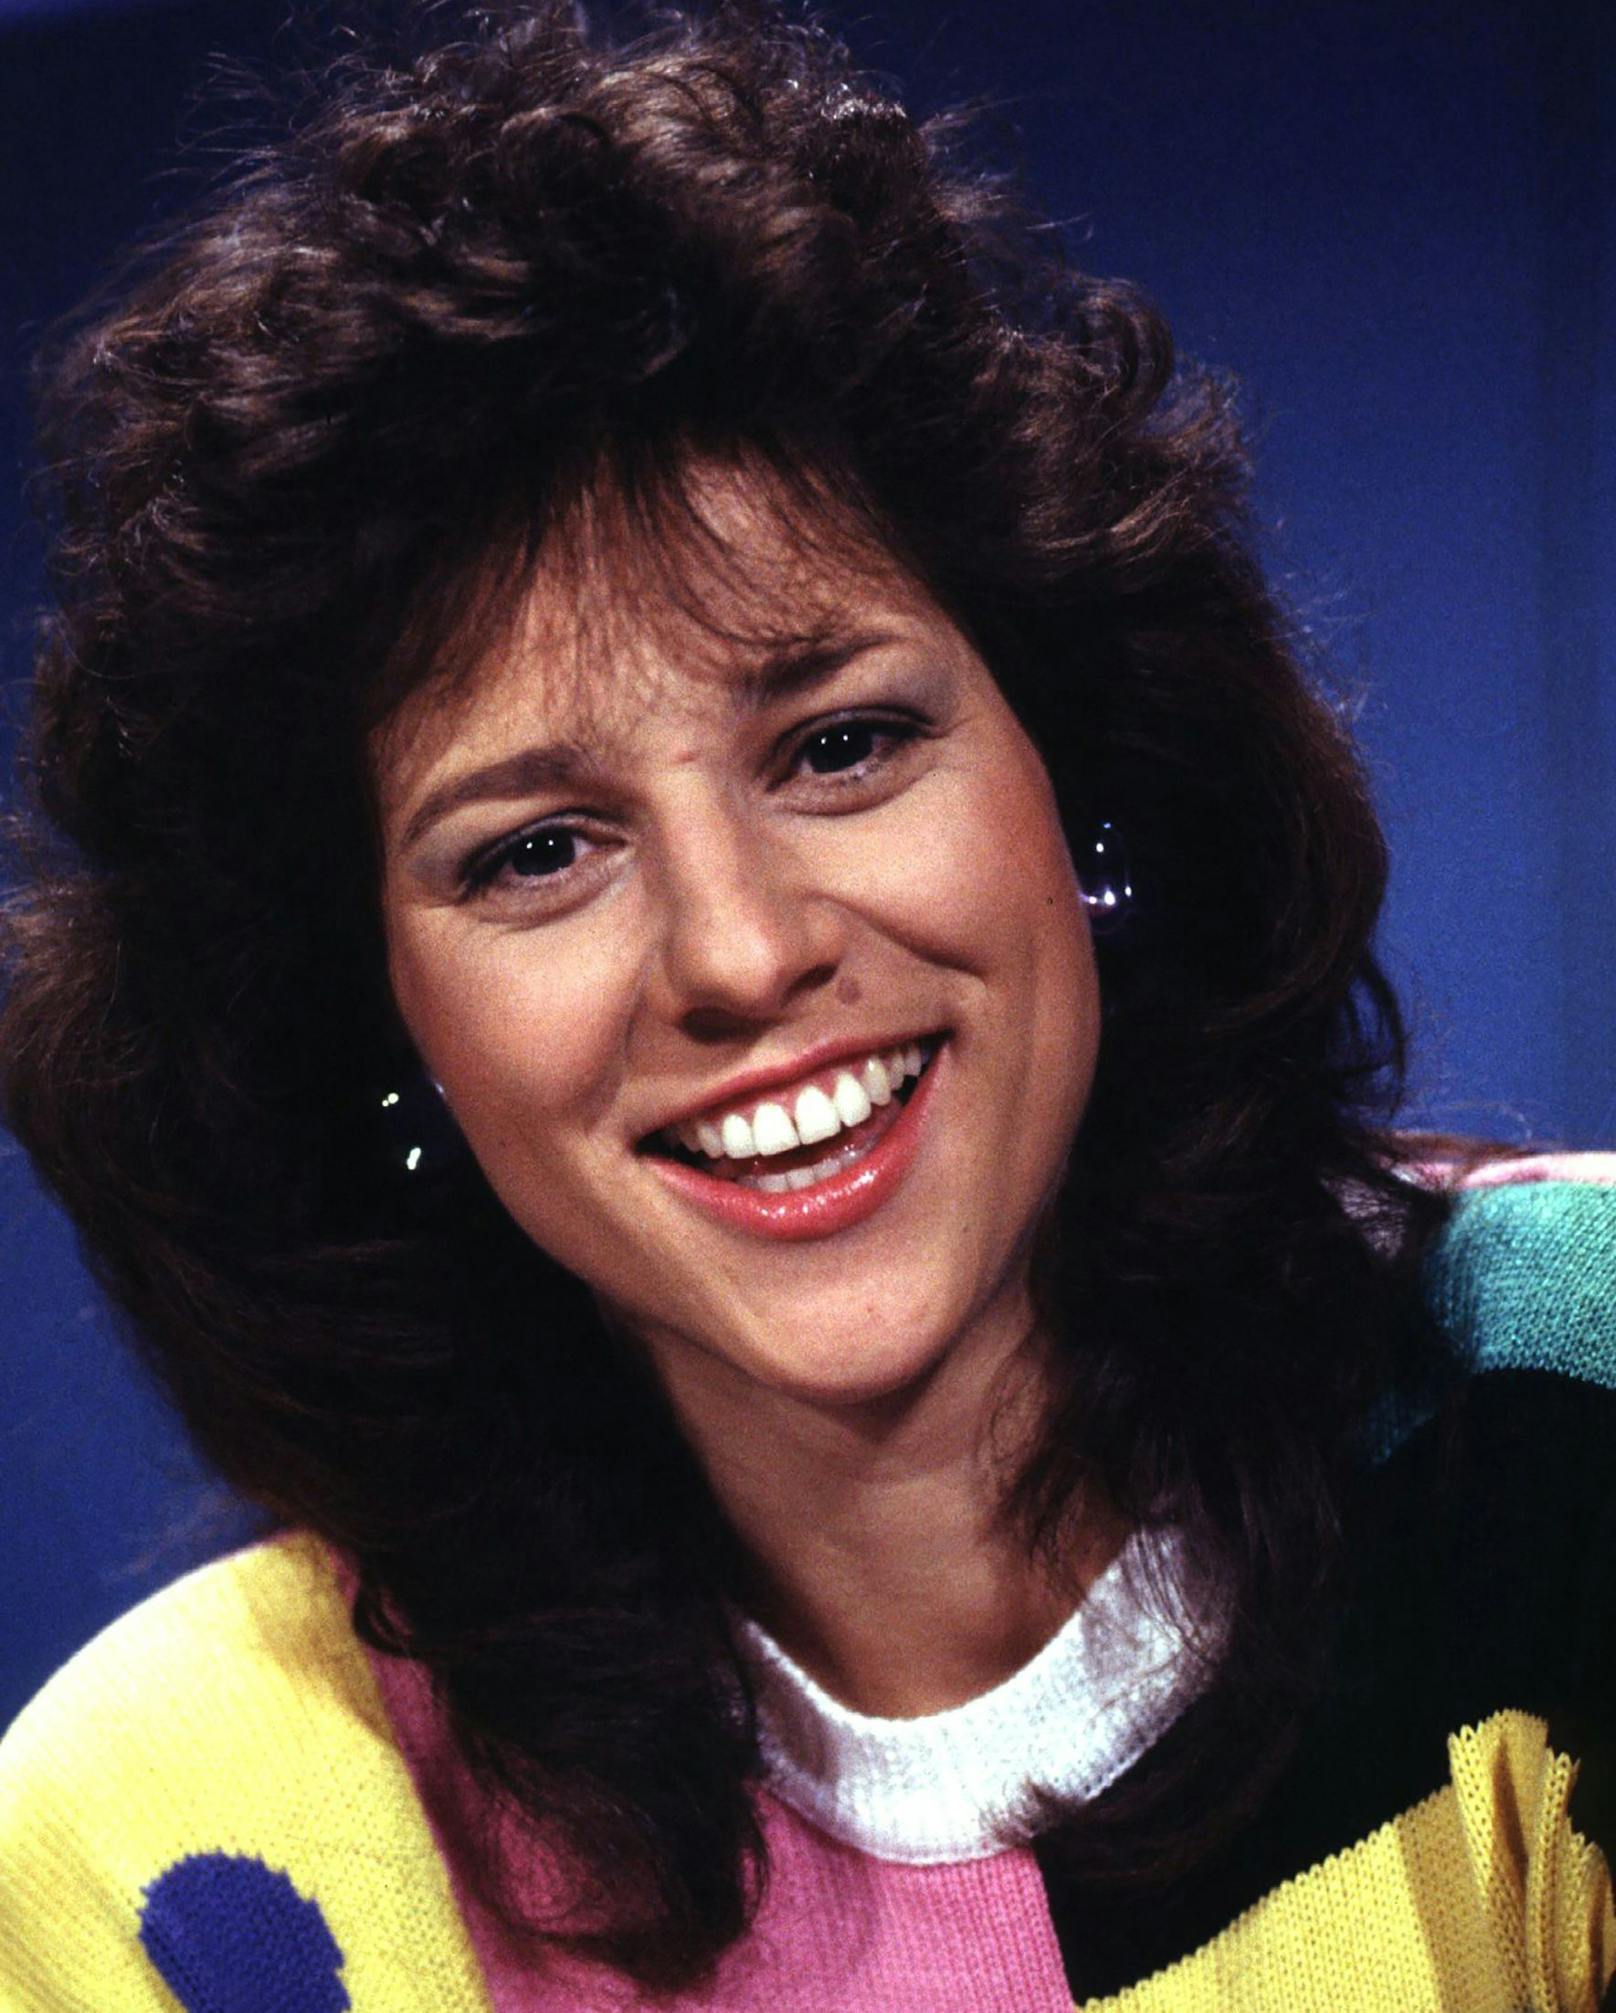 Vera Russwurm startete 1978 als "Tritsch Tratsch"-Girl im ORF. 15 Jahre später war sie bereits mehrfach ausgezeichnet und als TV-Star bestens im Geschäft.